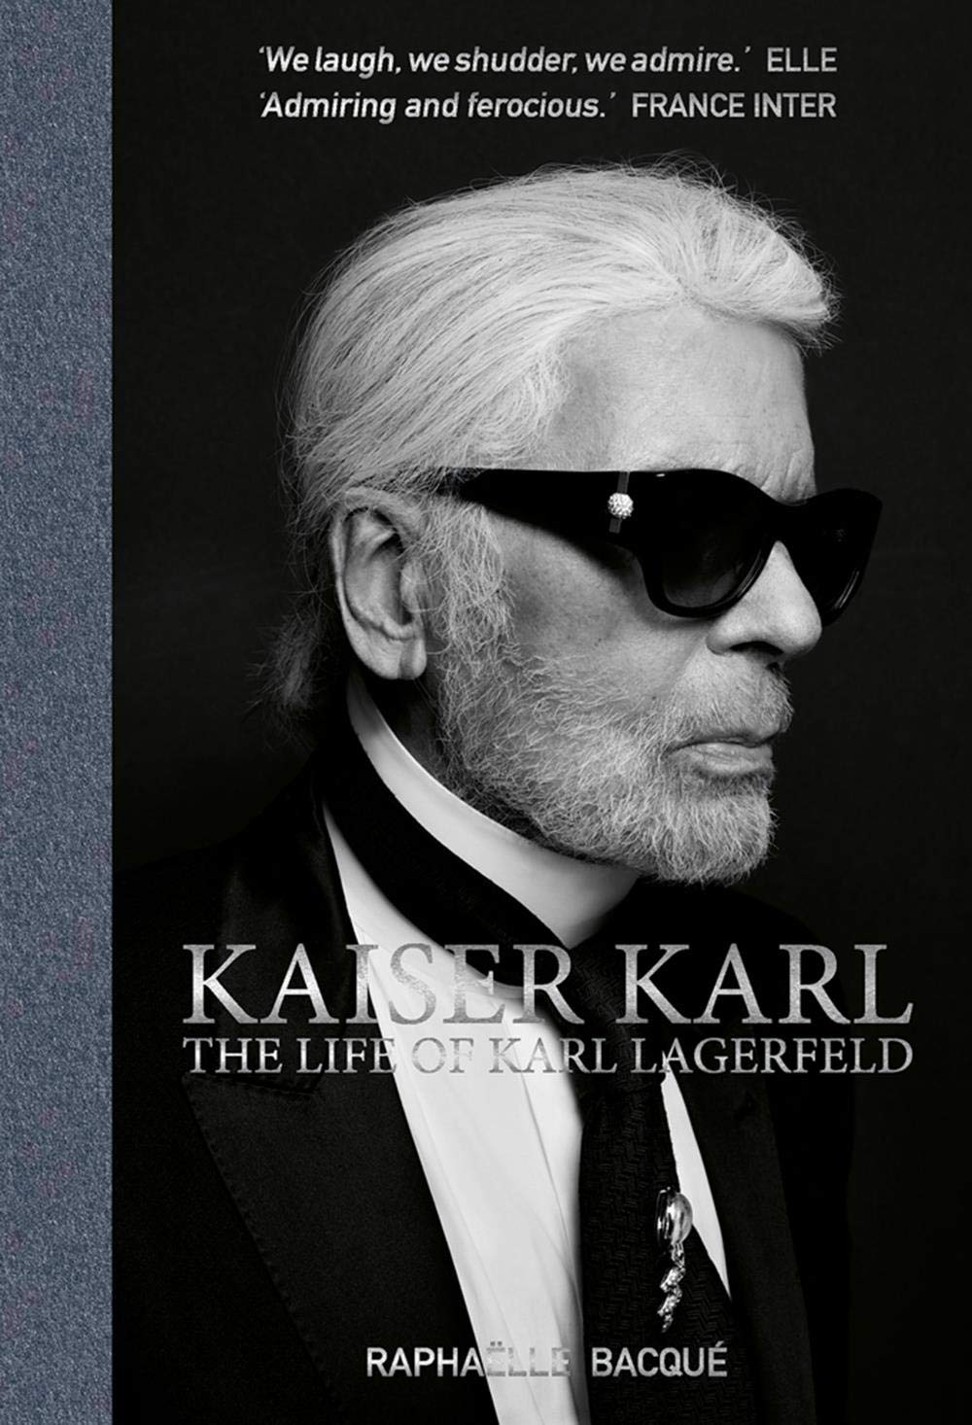 Kaiser Karl: The Life of Karl Lagerfeld by Raphaelle Bacque.